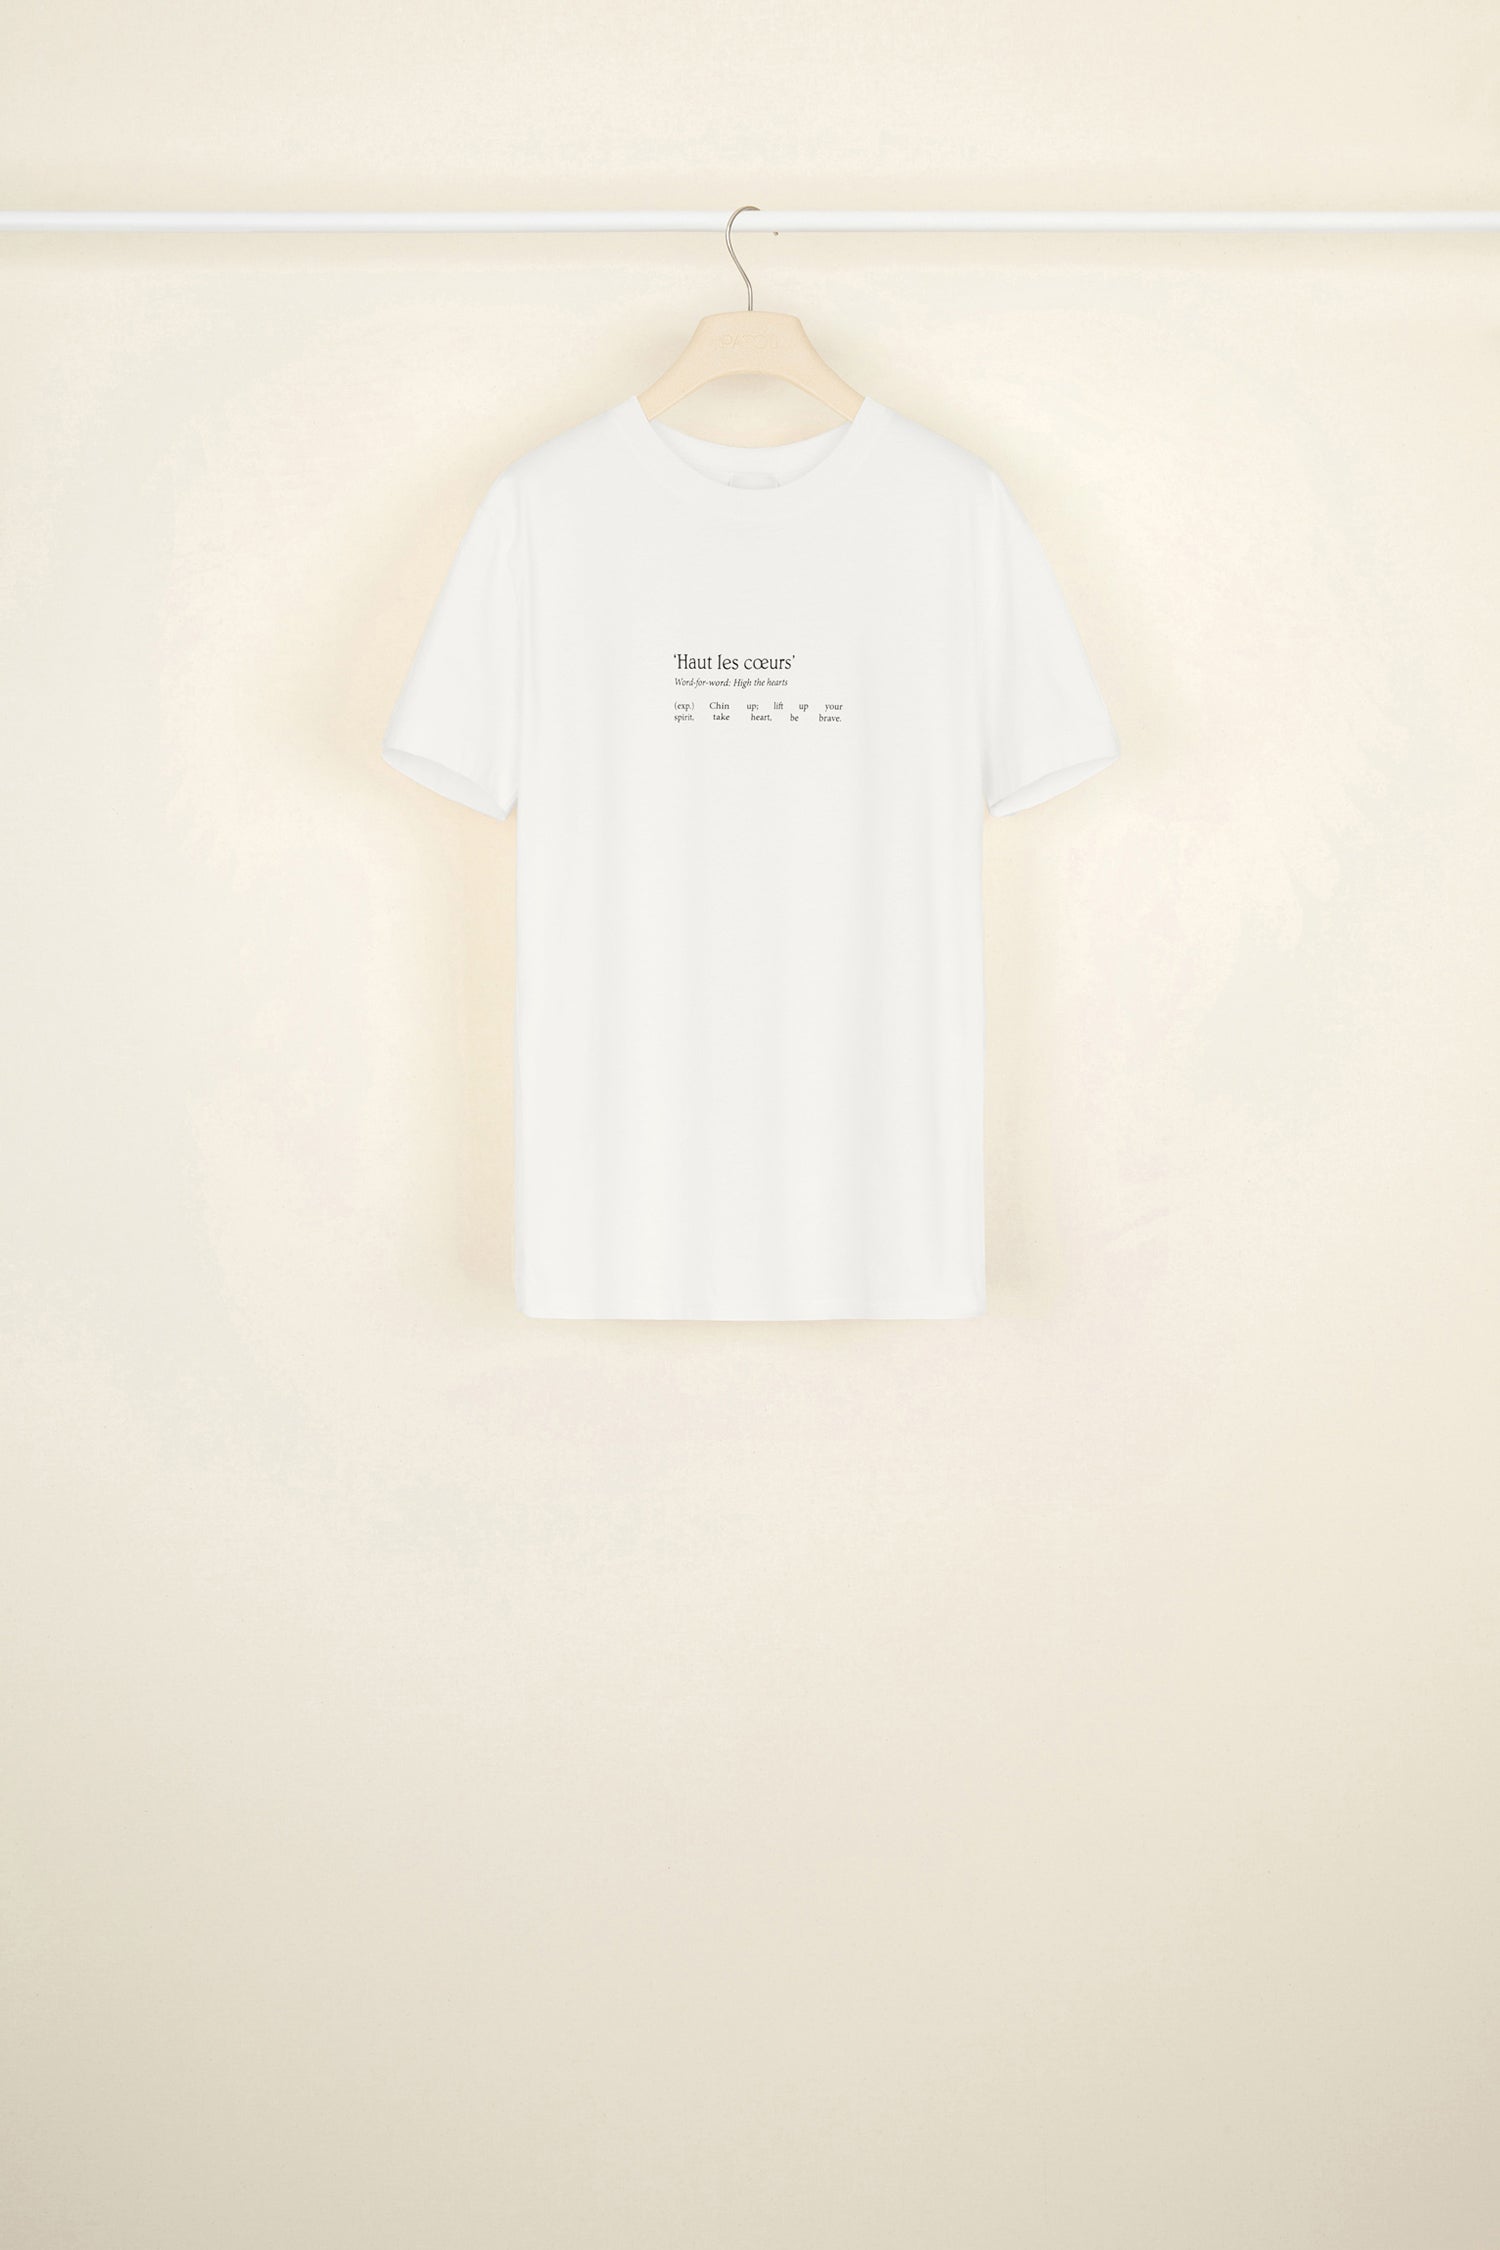 Tee-shirt Homme Haut les coeurs — Haut les coeurs Collection